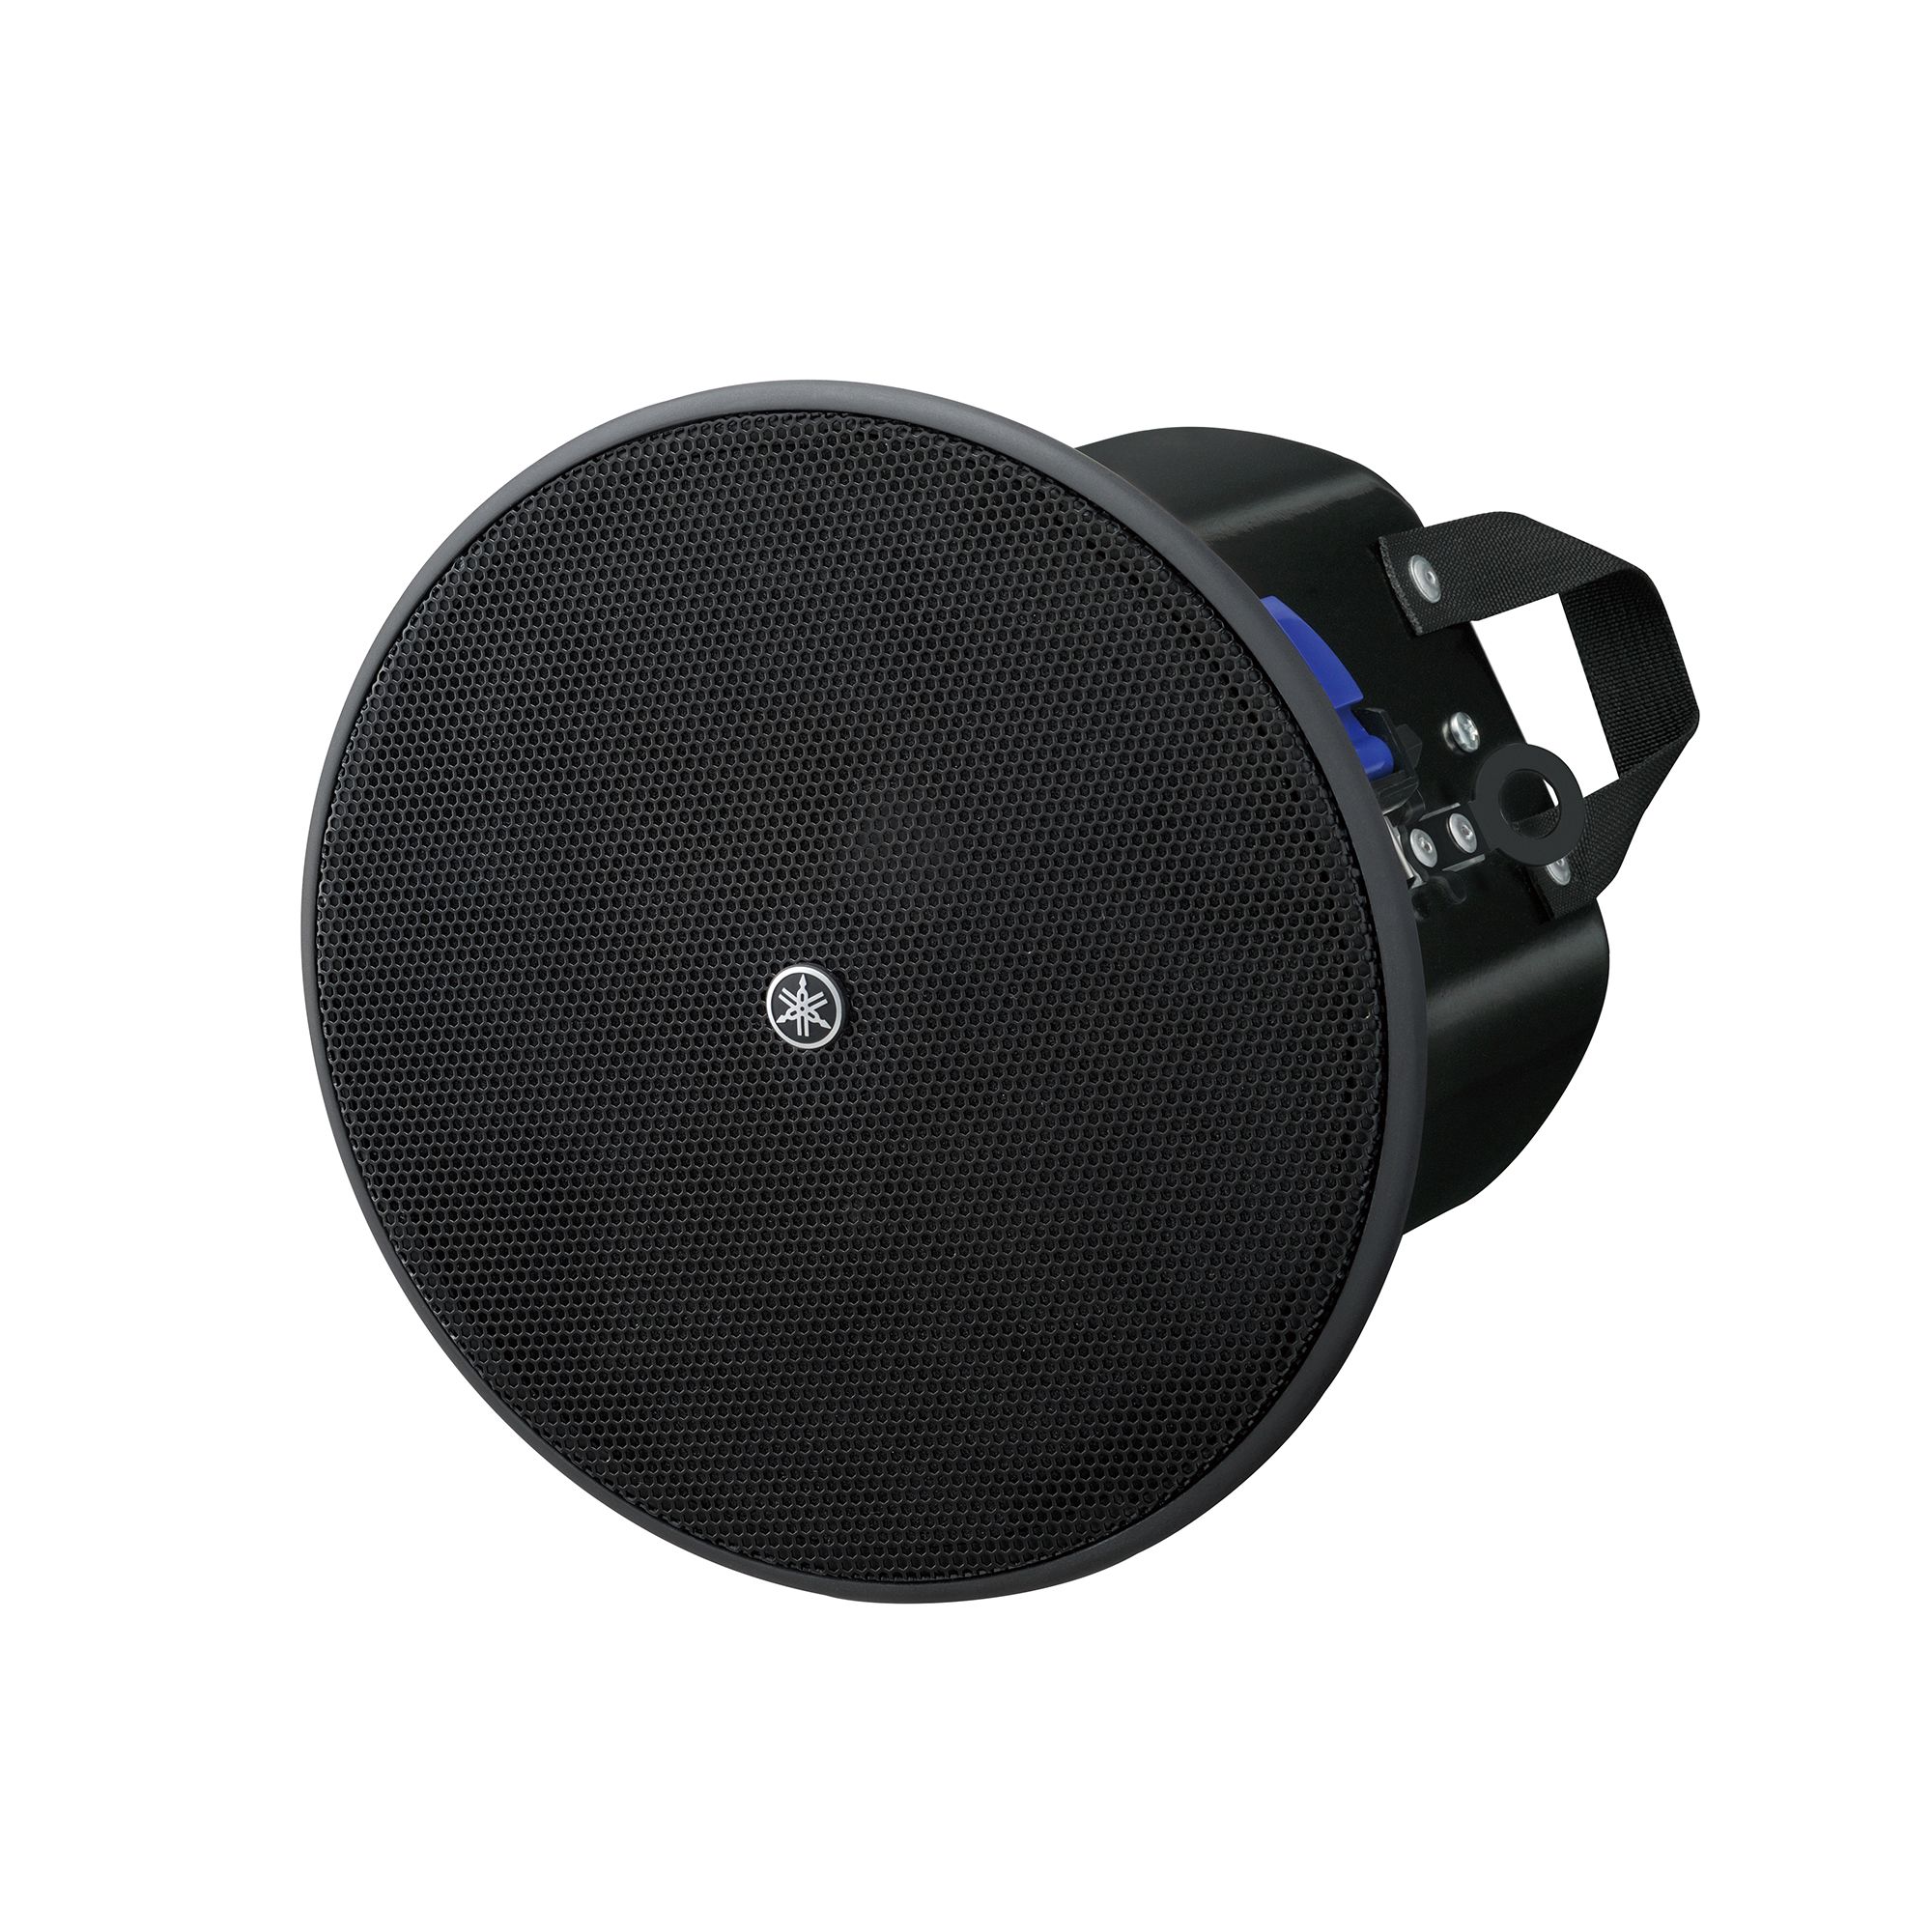 Yamaha VXC4  Ceiling speaker full-range loudspeaker with a 4" driver